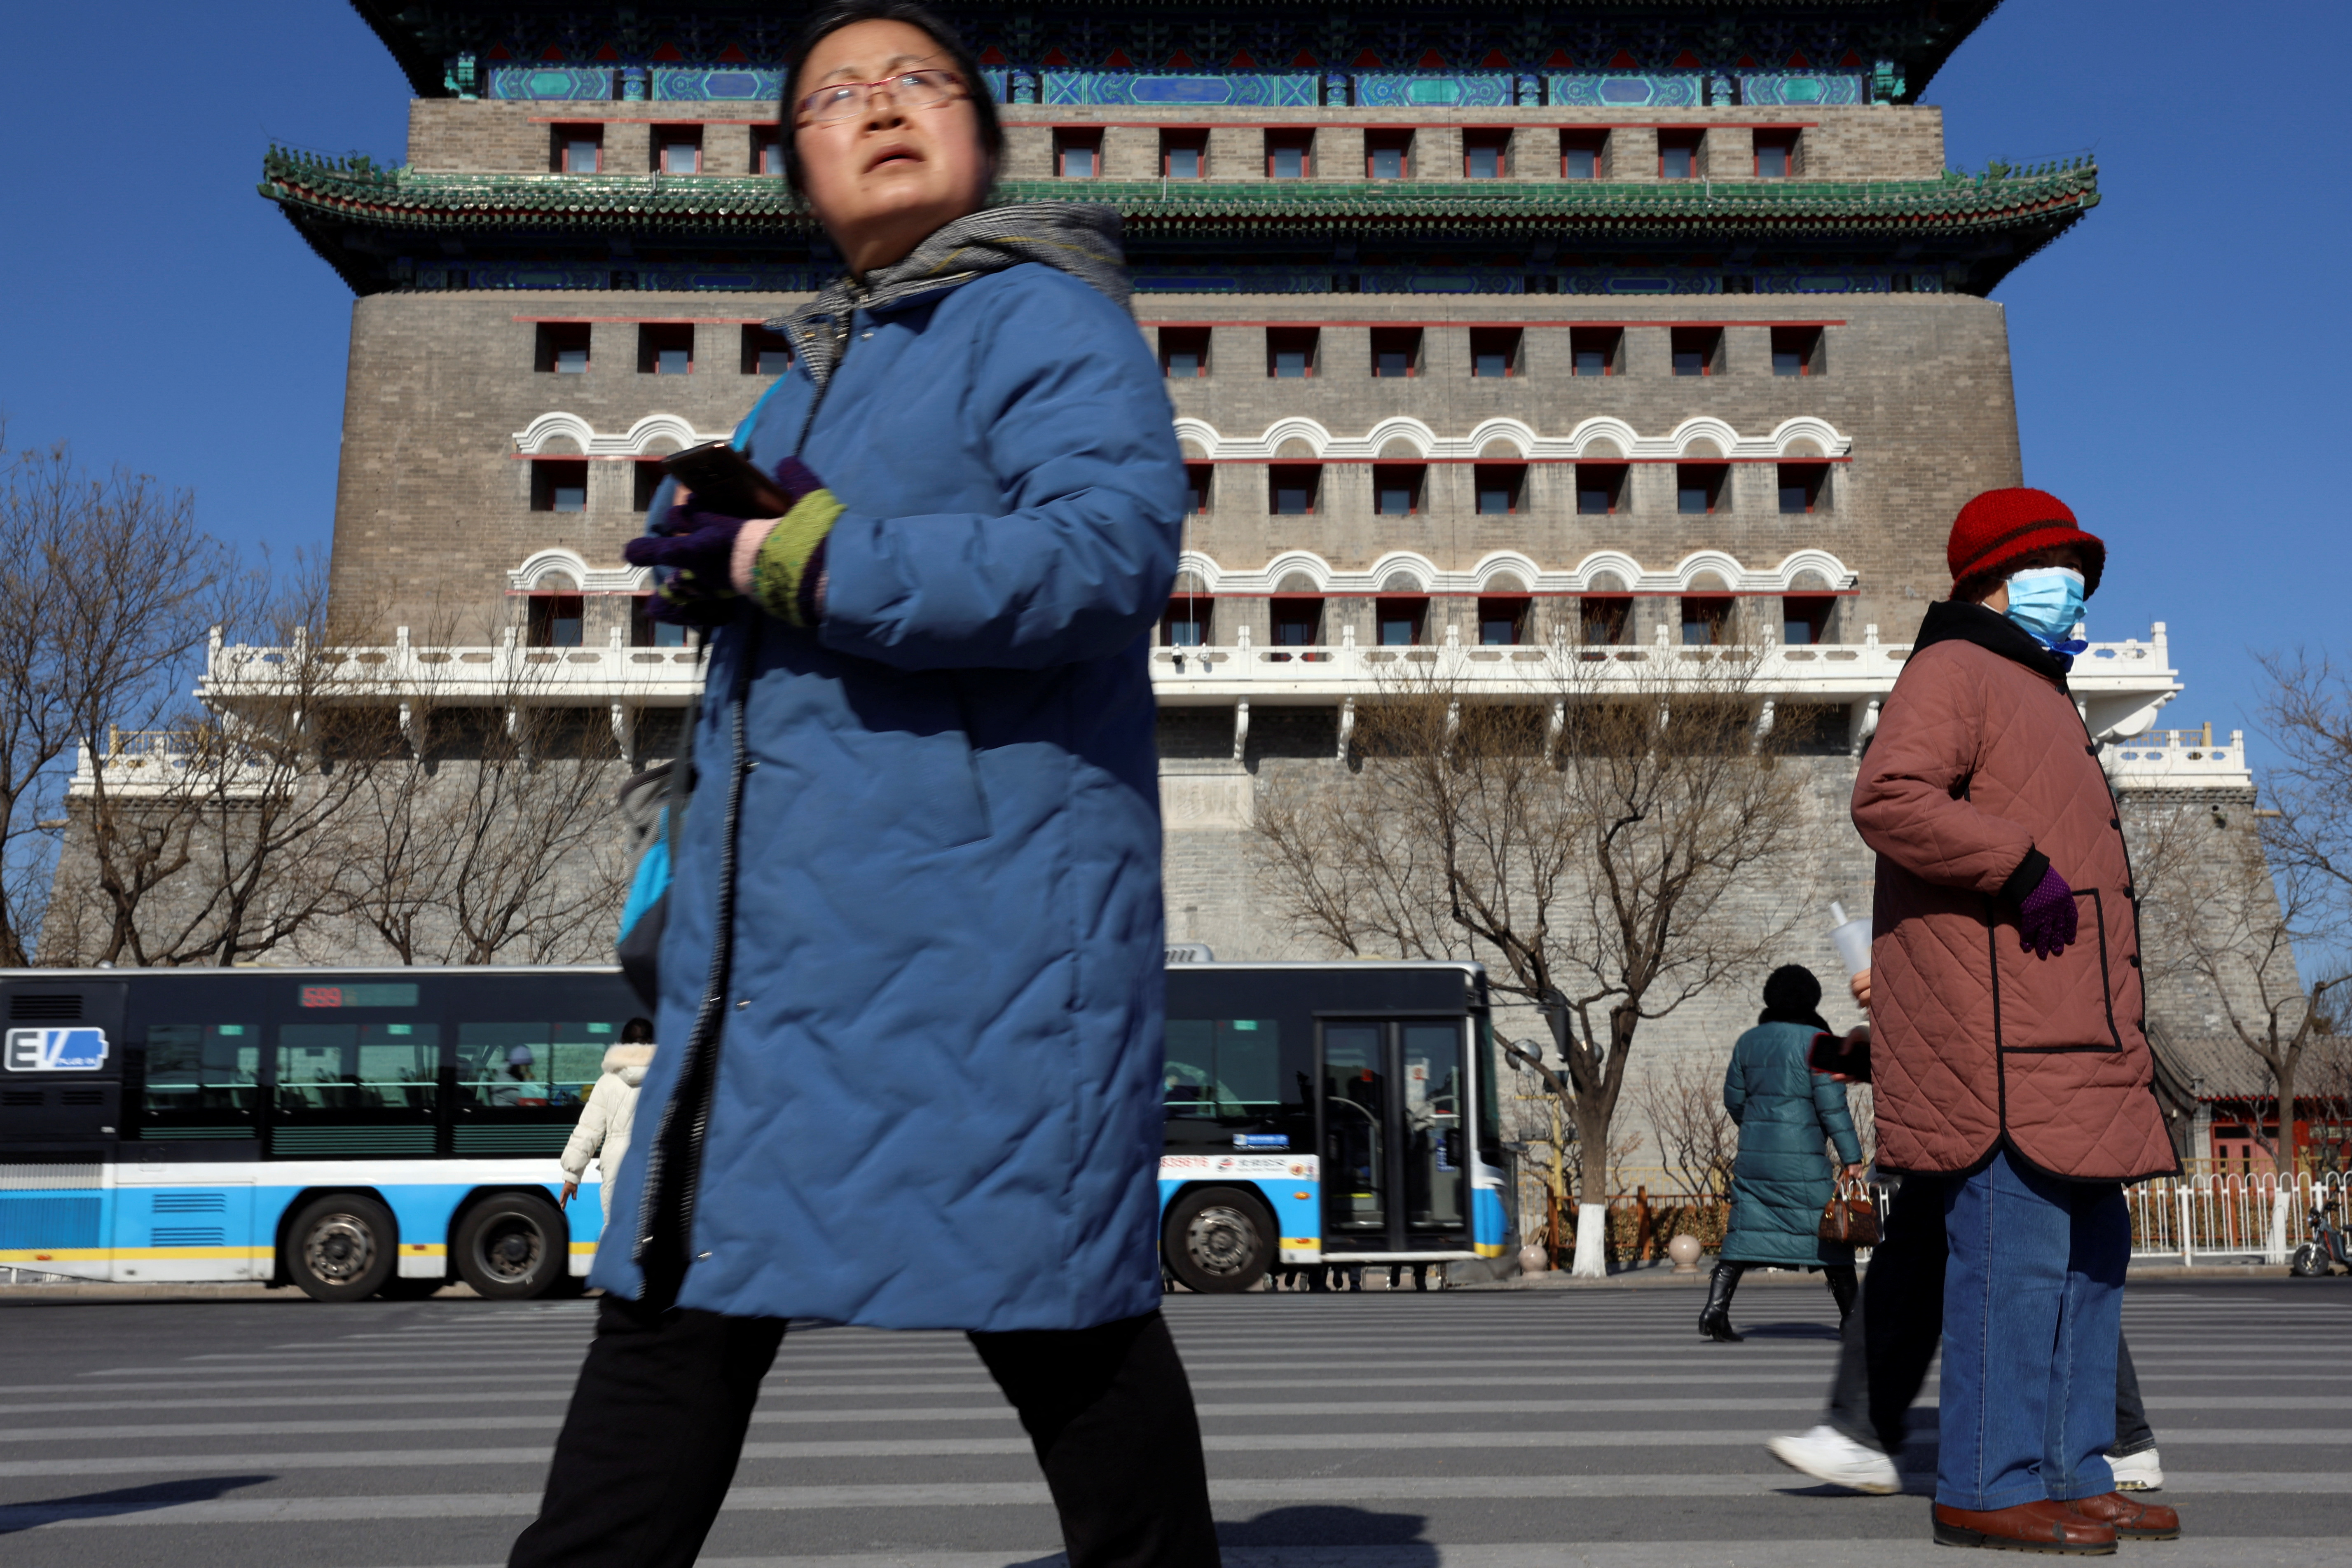 Pedestrians walk on a crossing near the Qianmen Gate in Beijing